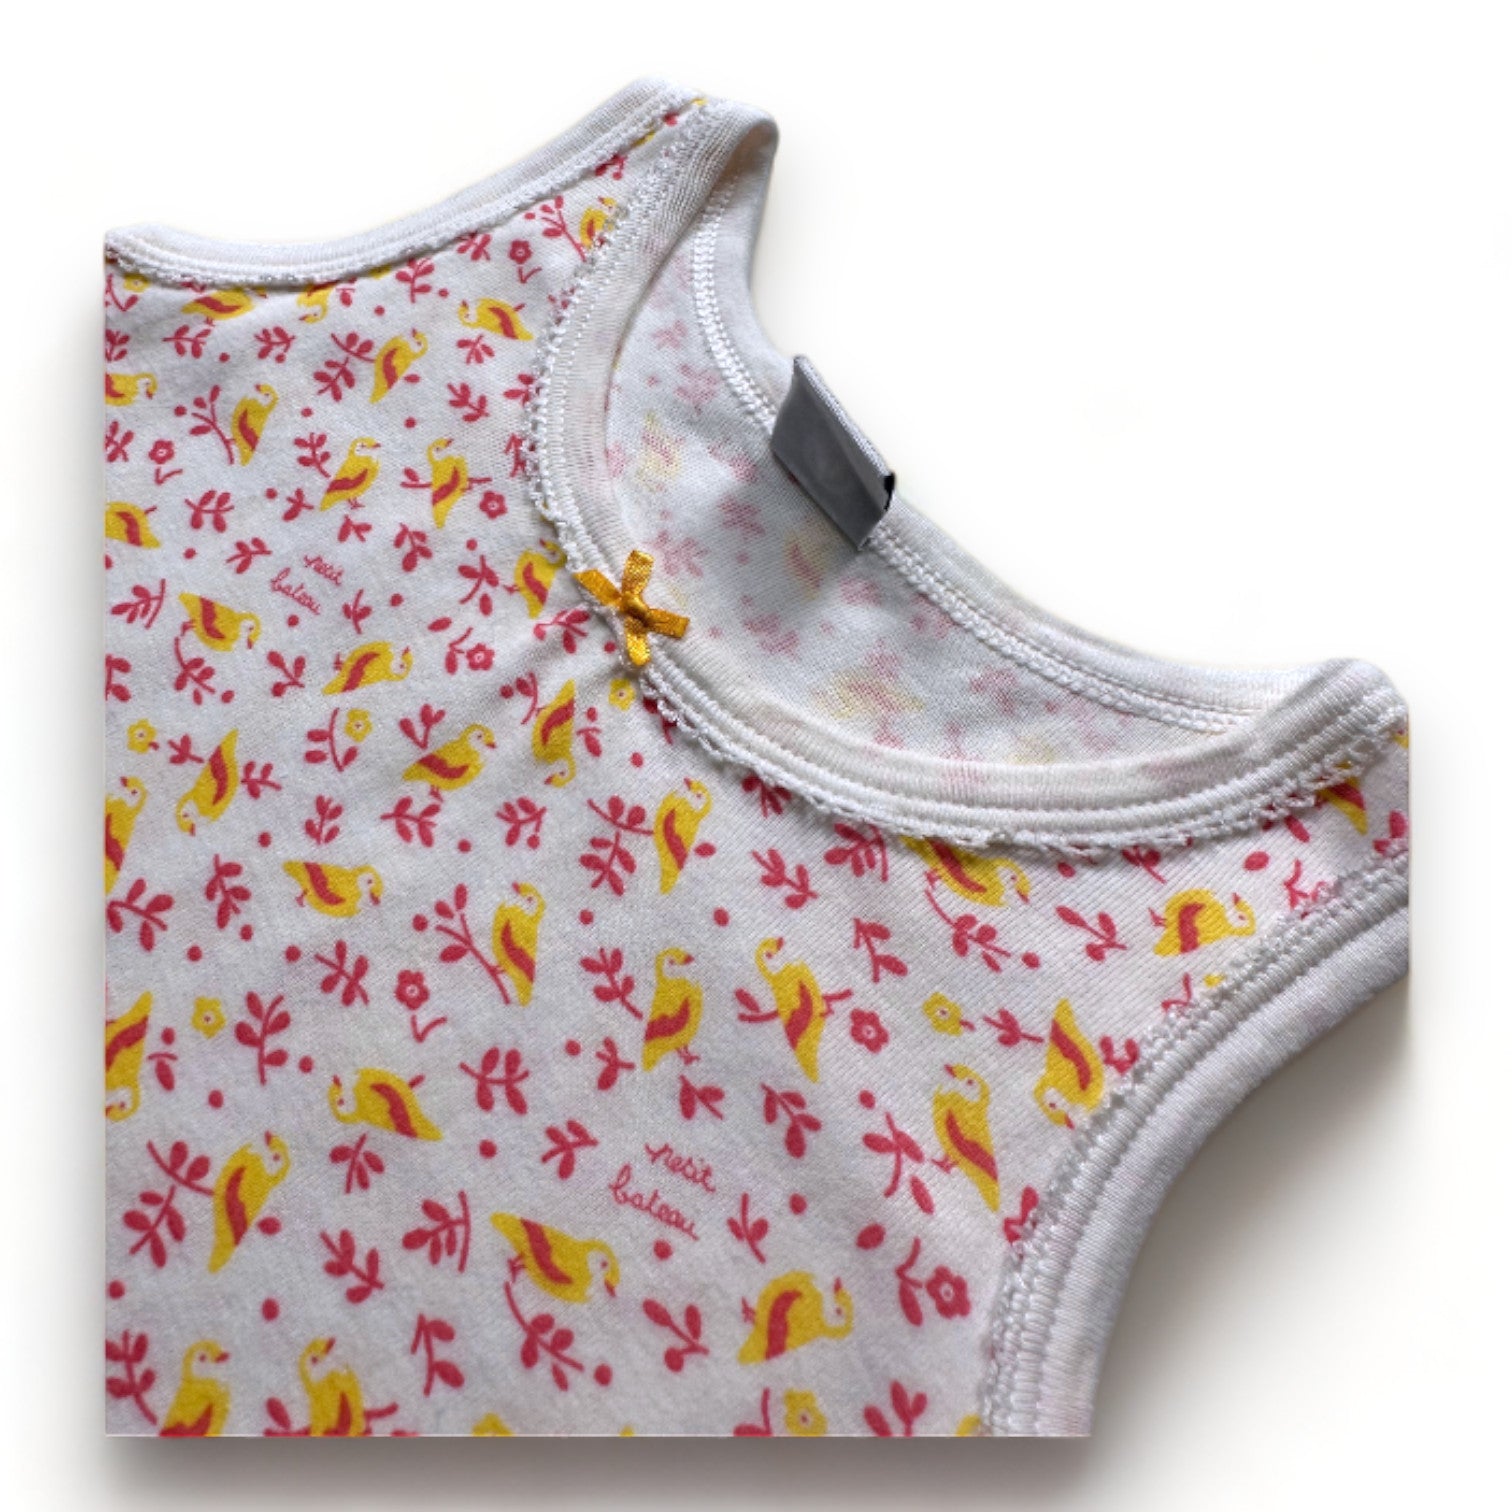 PETIT BATEAU - Combinaison blanche avec imprimés jaunes et roses - 18 mois